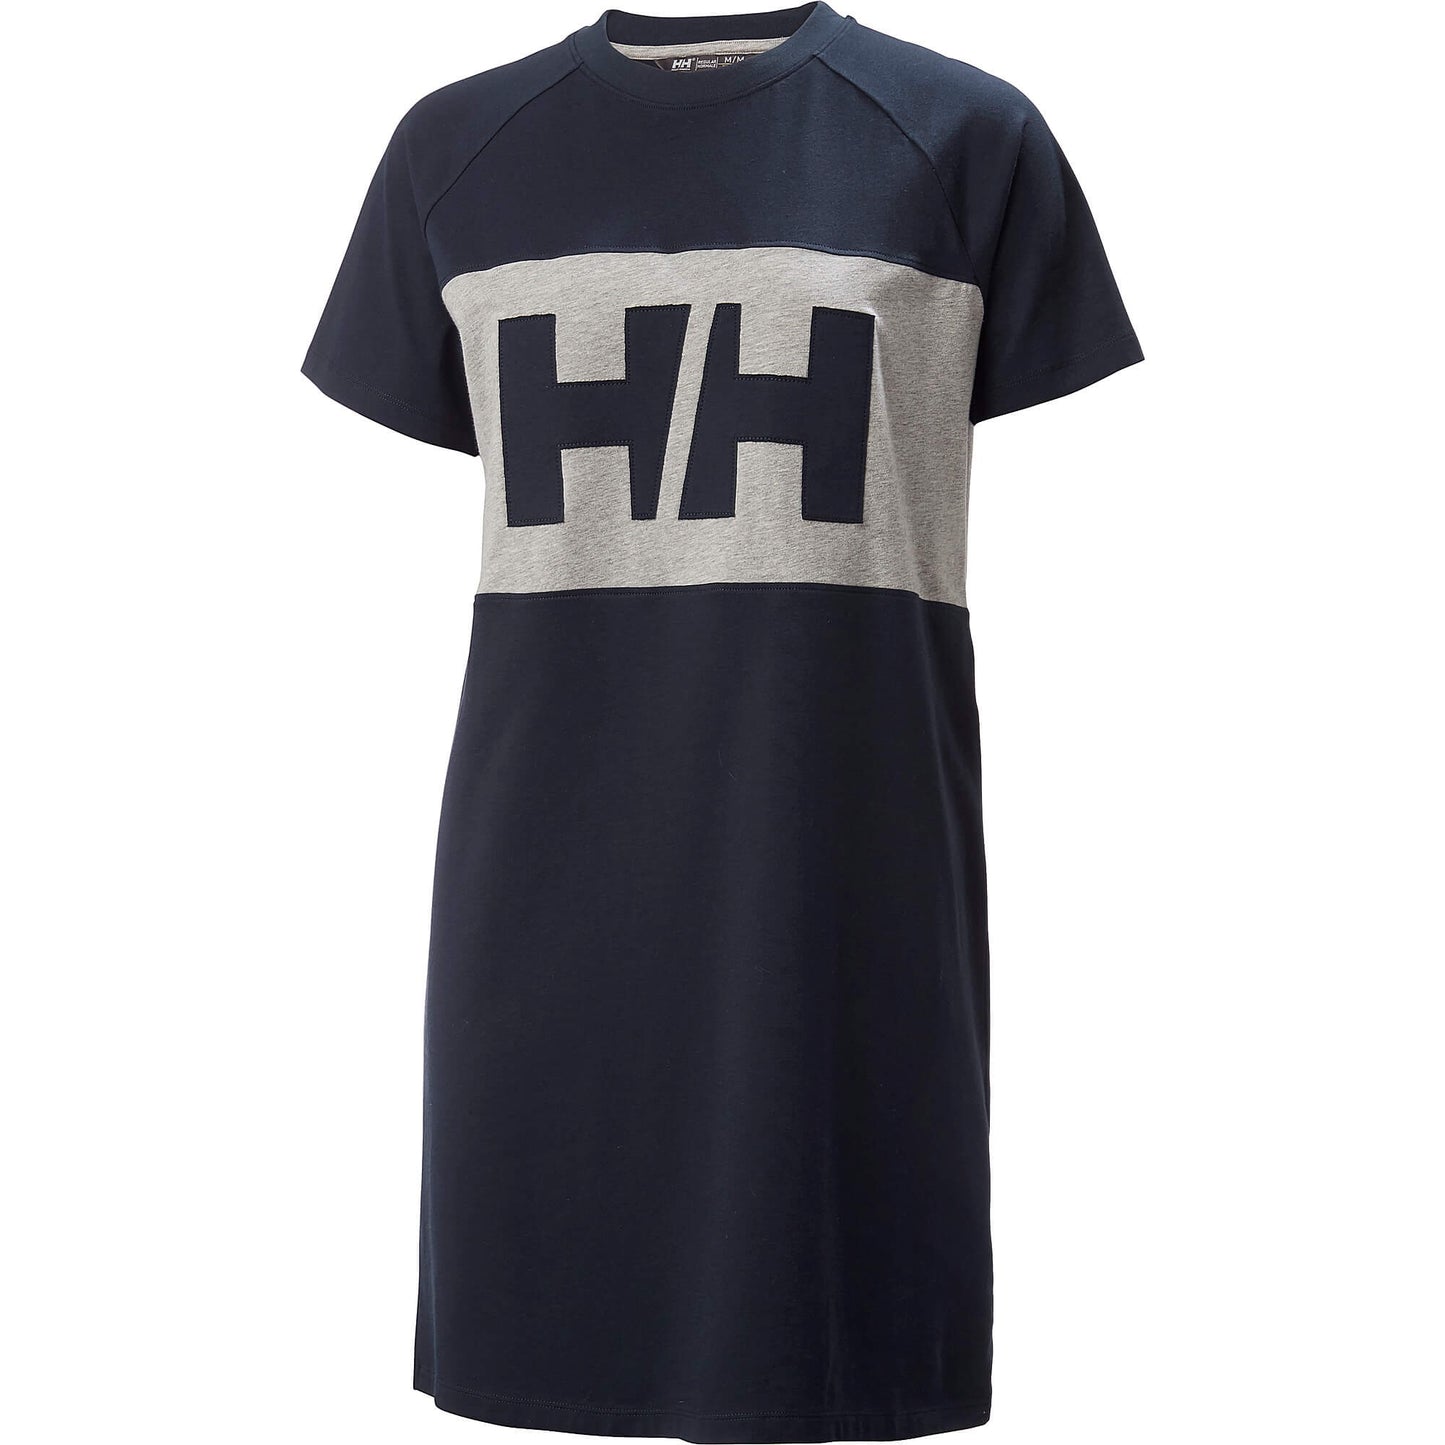 Helly Hansen Wmns Active T-Shirt Dress Navy